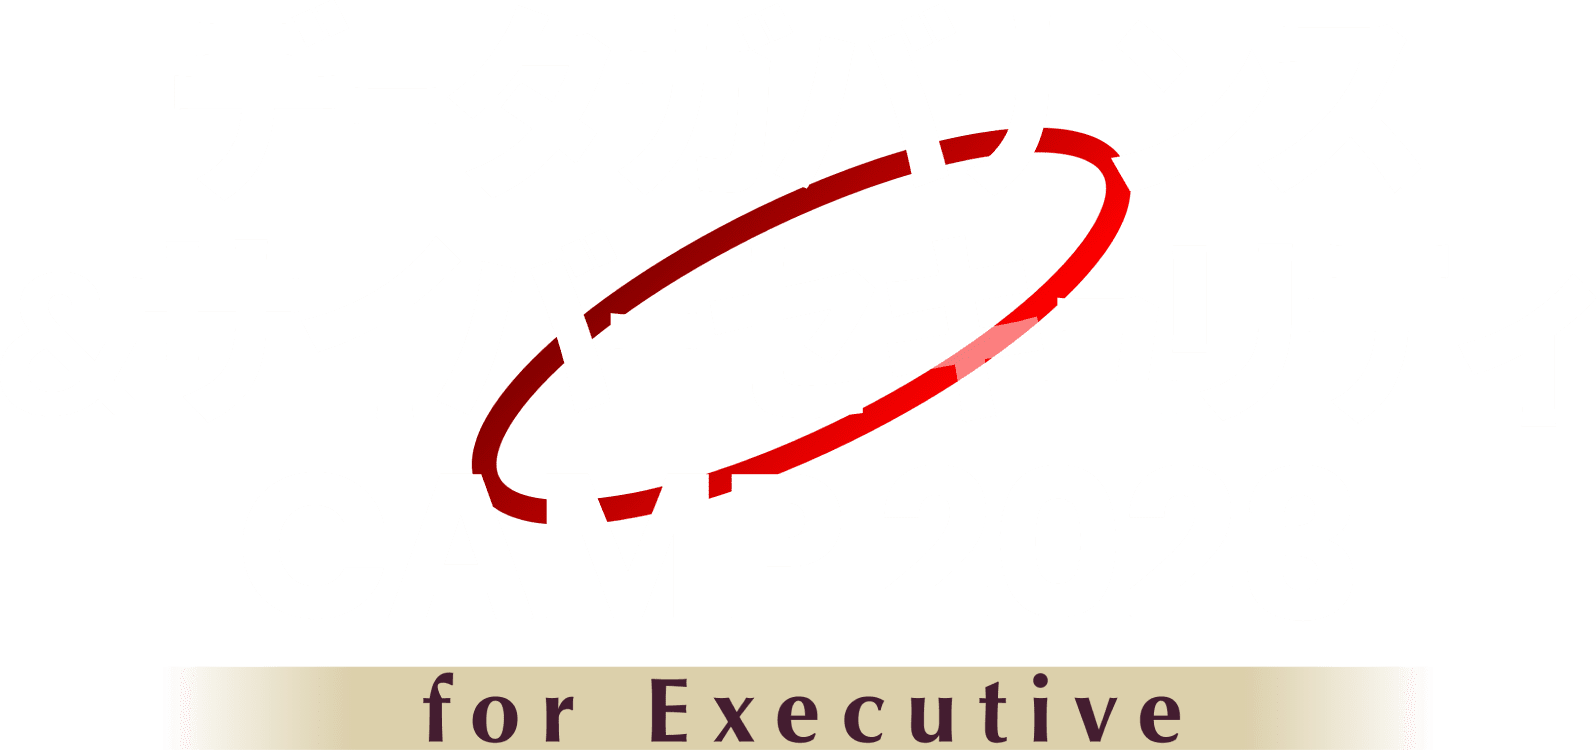 データガバナンス&セキュリティCAMP 2023 FOR EXECUTIVE